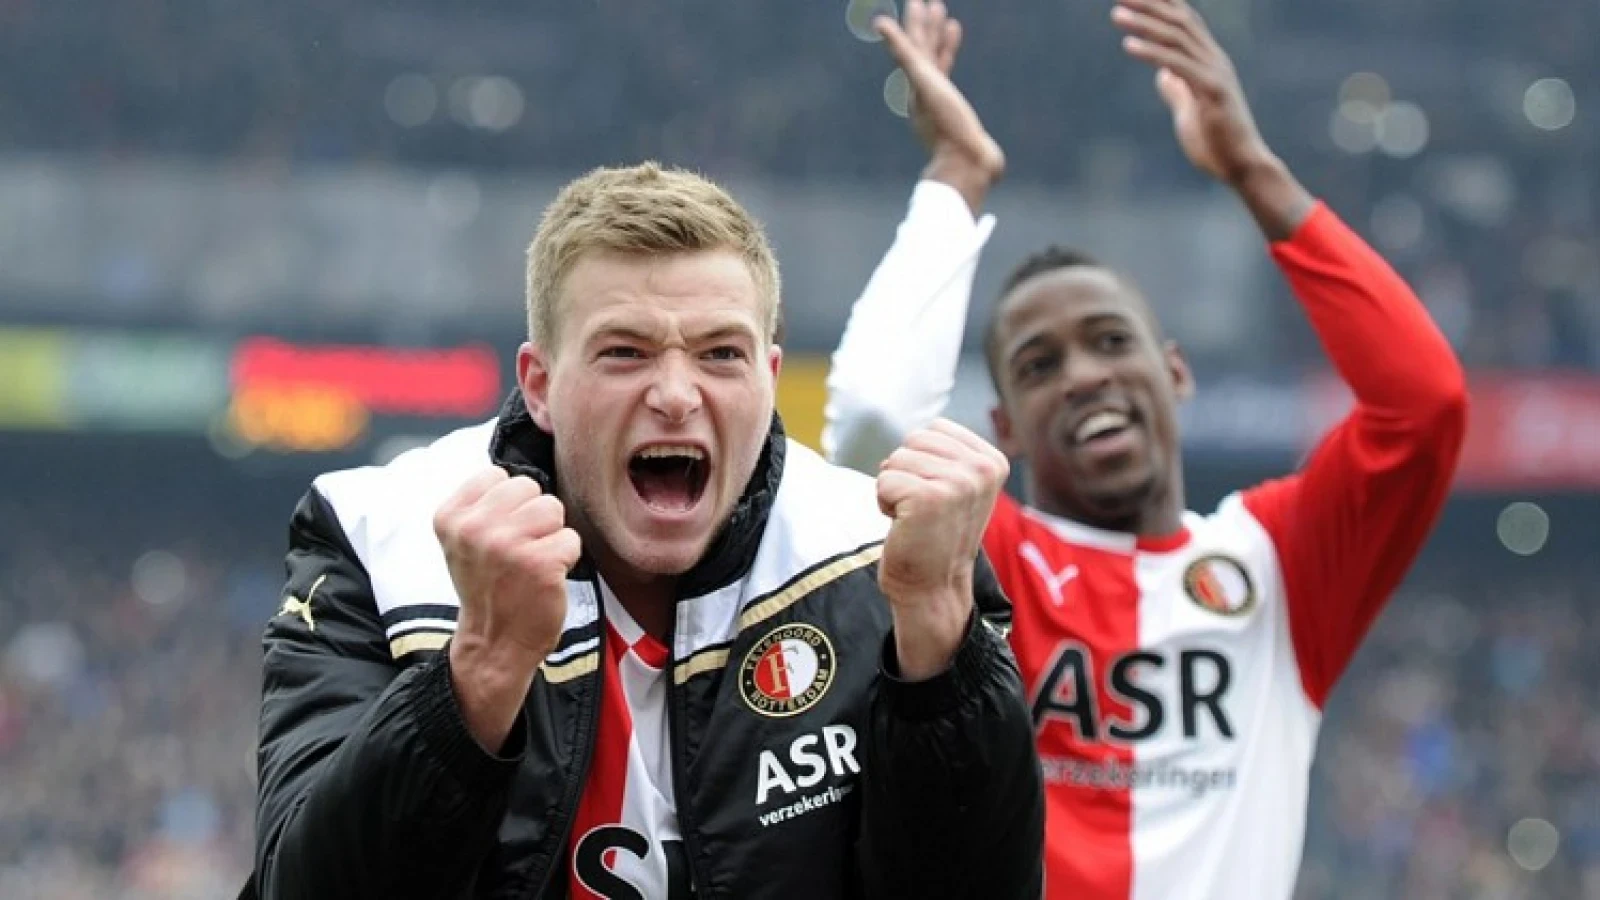 VIDEO | Feyenoord op zoek naar eerherstel, goals van Guidetti als inspiratie